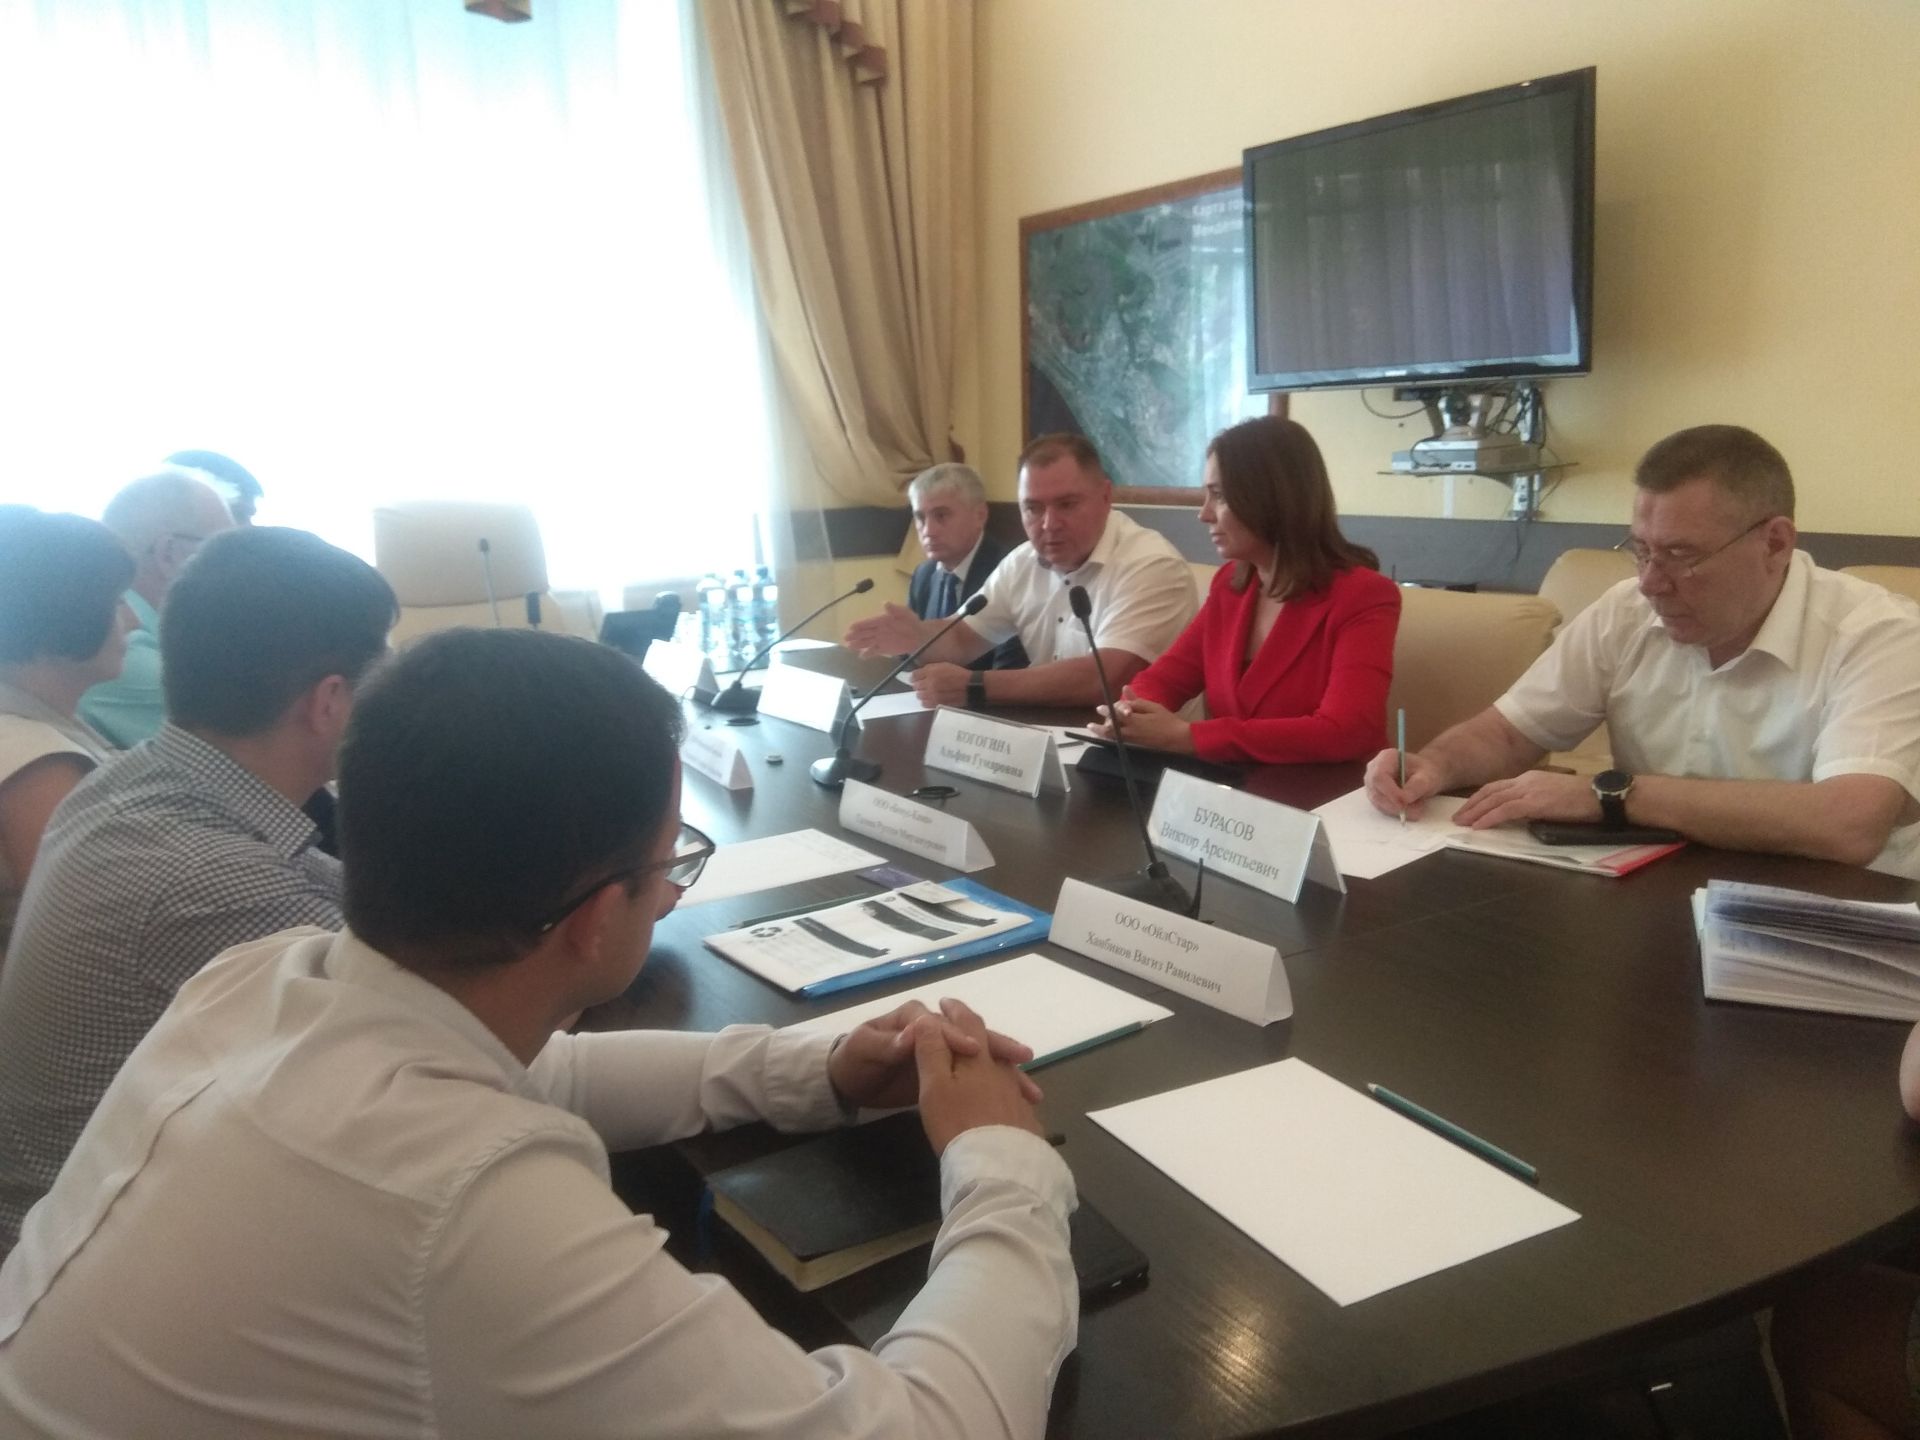 Альфия Когогина: «Промышленные площадки позволят создать новые рабочие места в ТОСЭР "Менделеевск"»